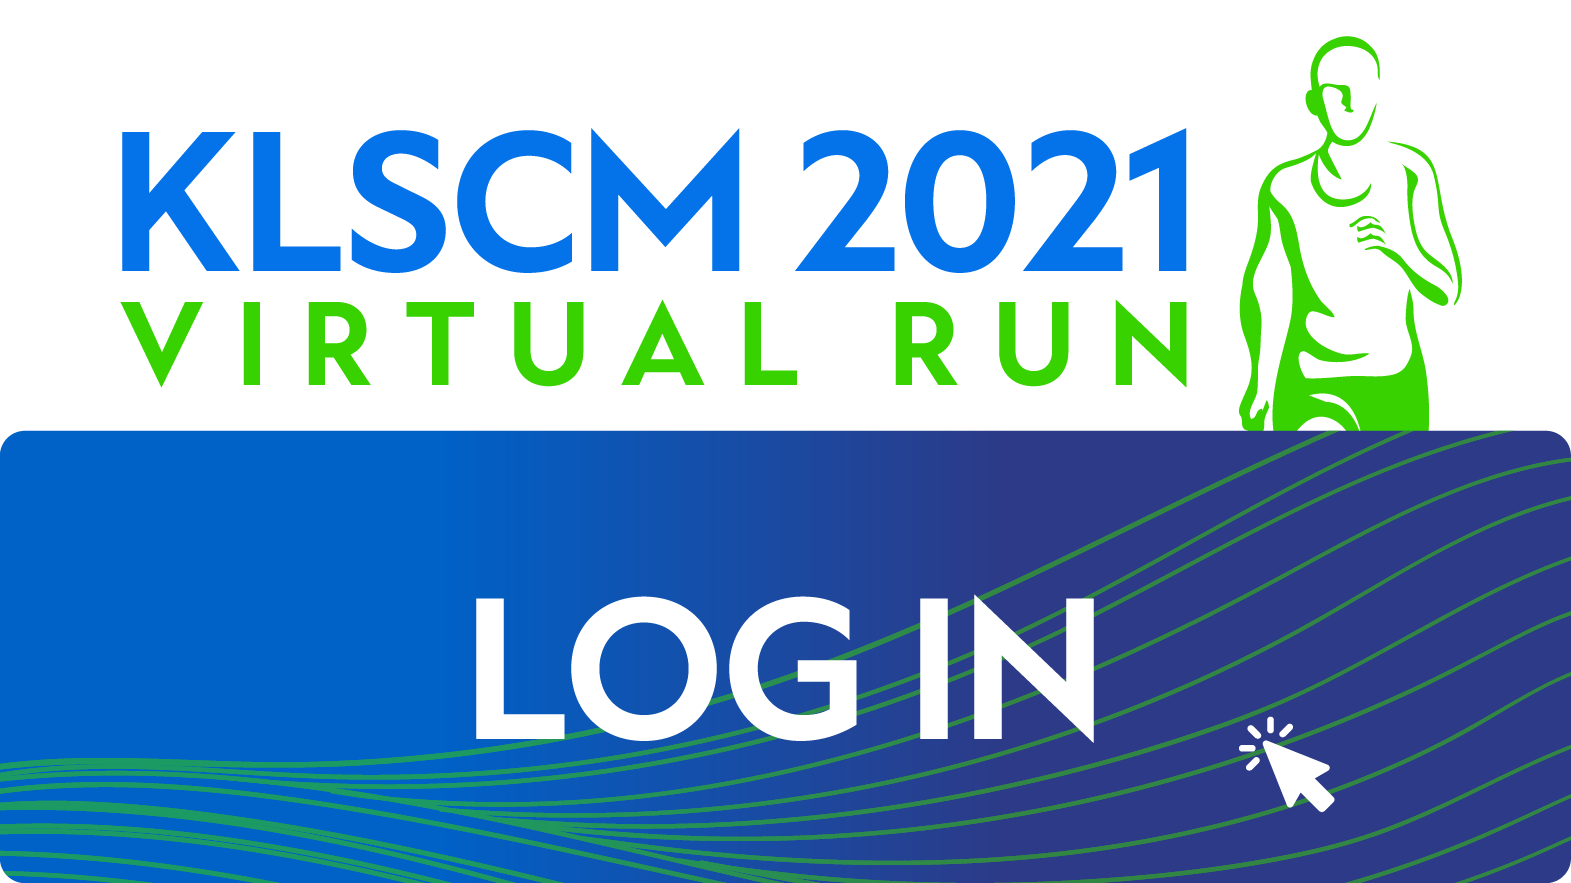 Klscm virtual run